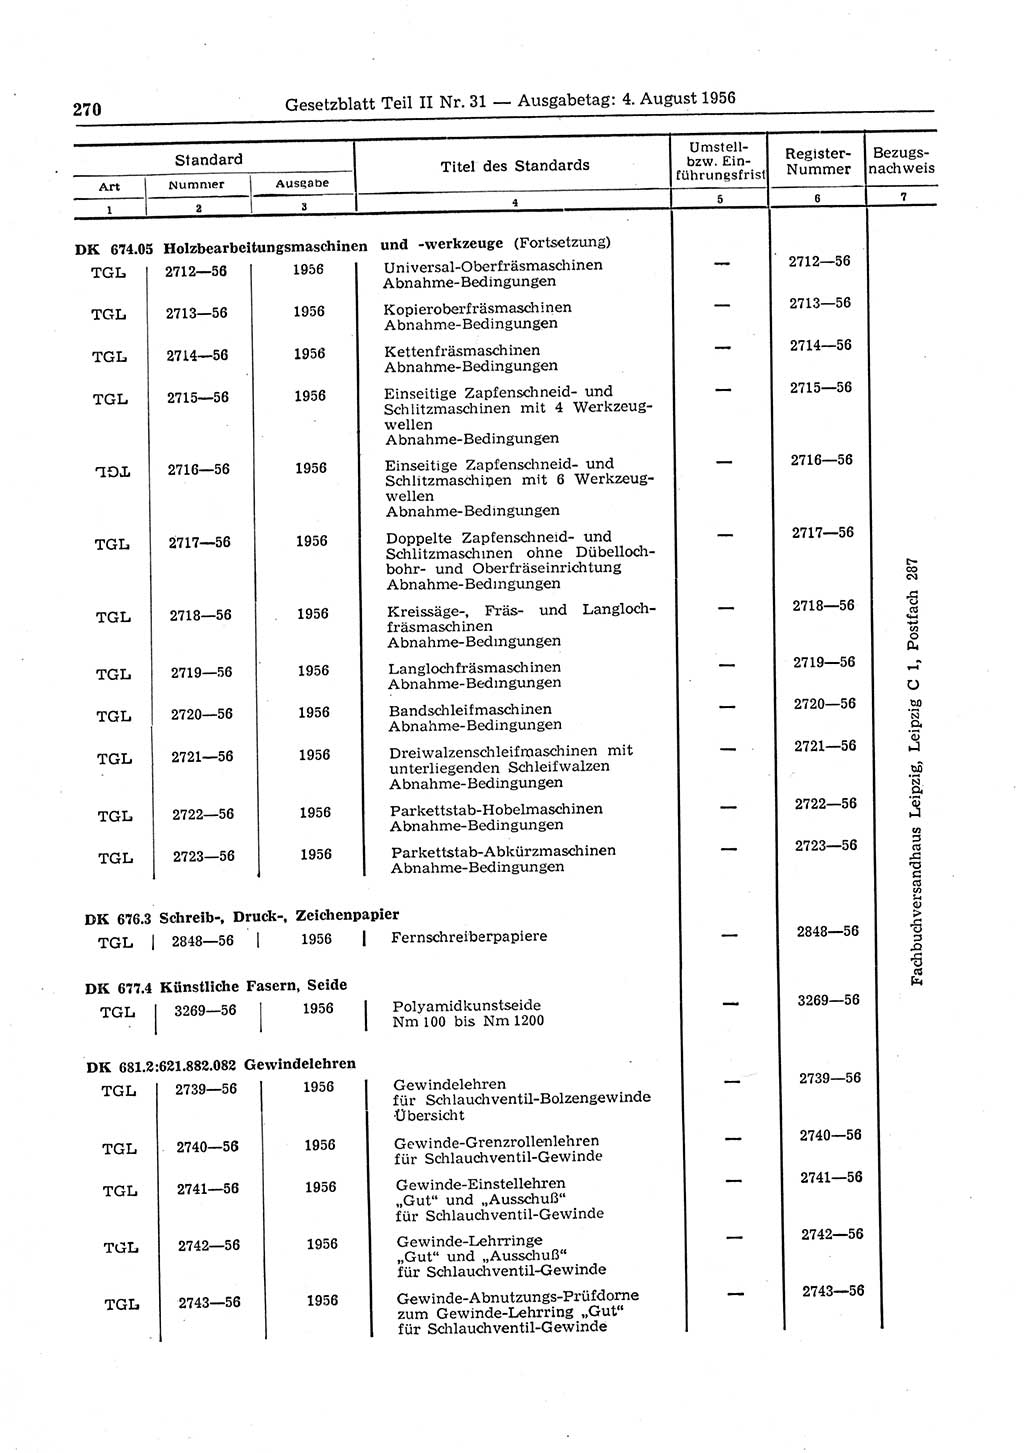 Gesetzblatt (GBl.) der Deutschen Demokratischen Republik (DDR) Teil ⅠⅠ 1956, Seite 270 (GBl. DDR ⅠⅠ 1956, S. 270)